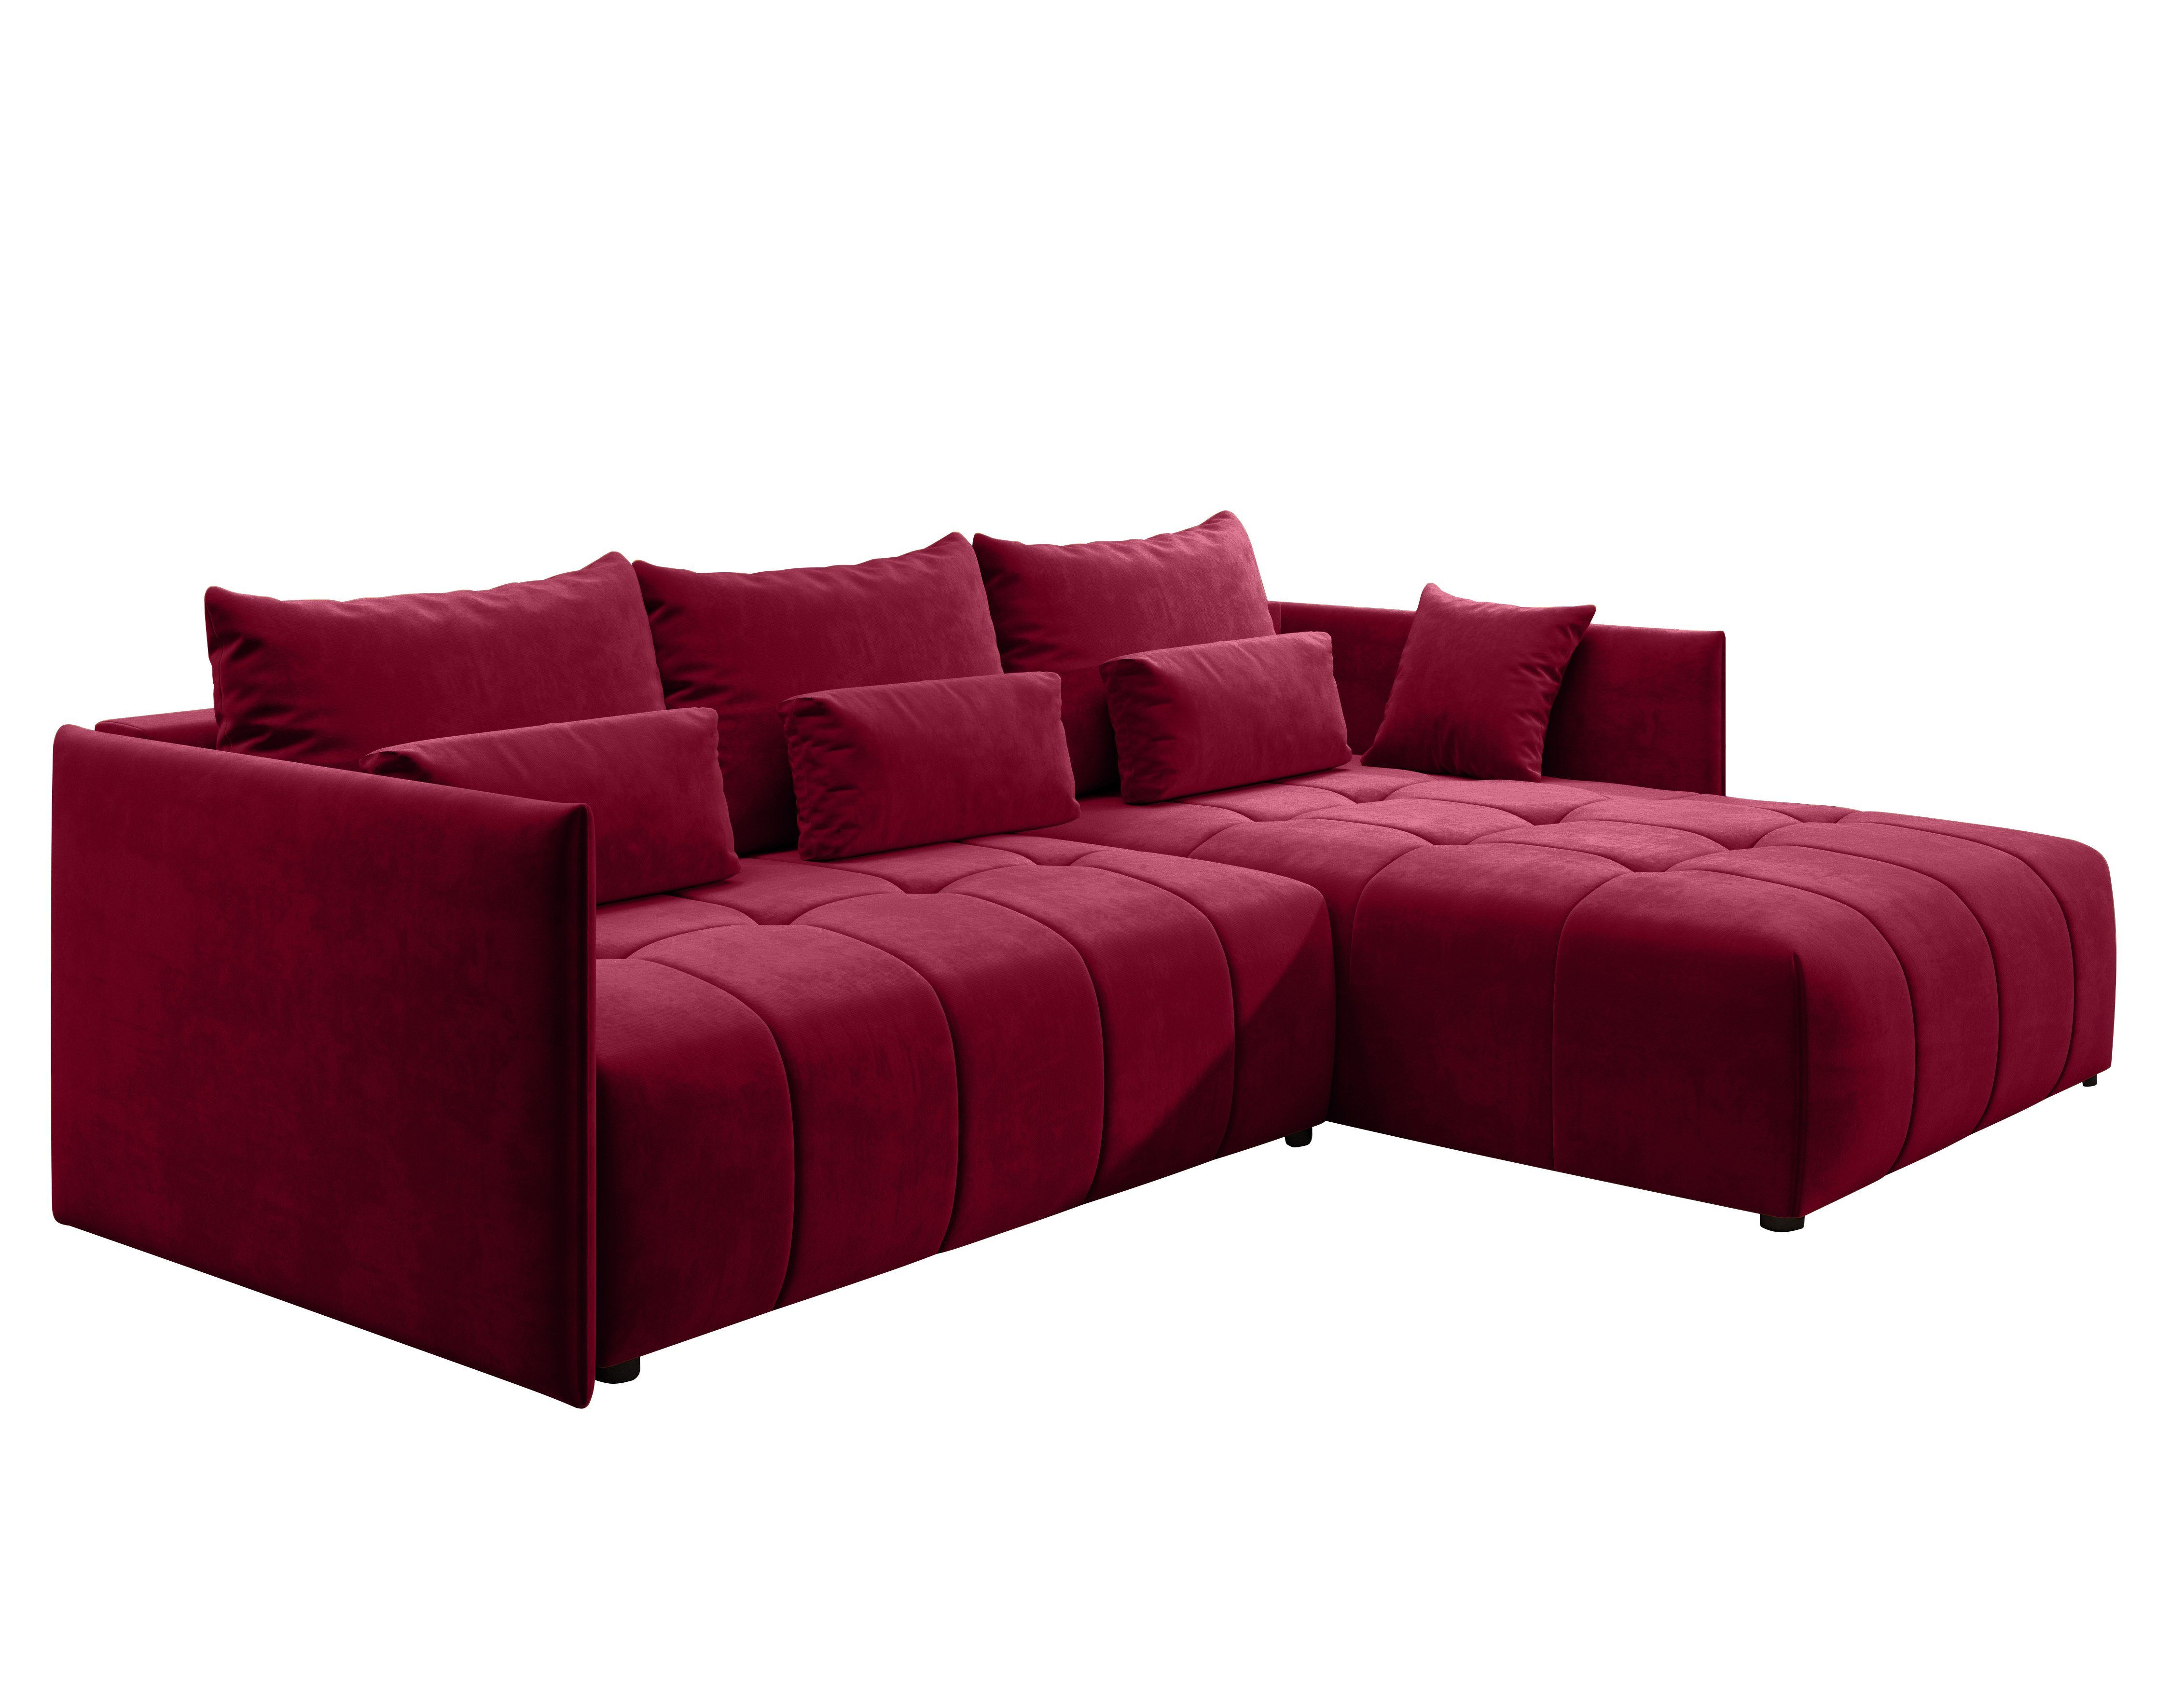 Furnix Ecksofa YALTA Couch Kissen, Europe 59 und mit MH Rot ausziehbar Schlafsofa Bettkasten in Made